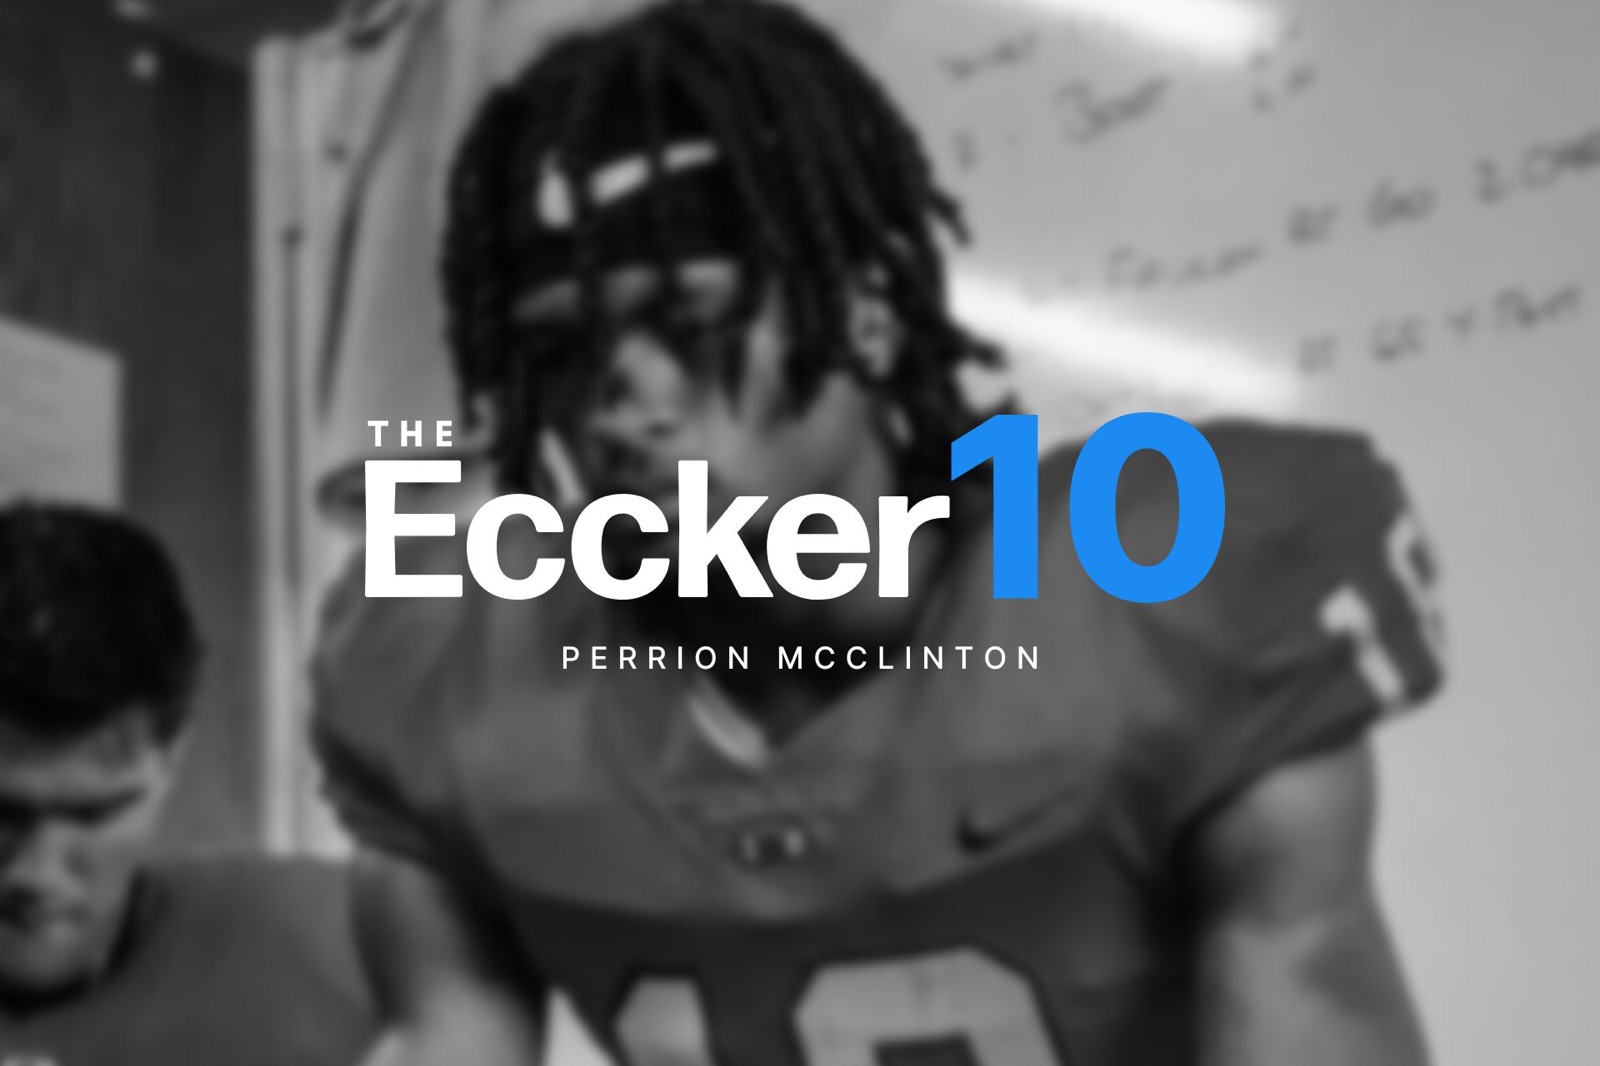 The Eccker 10 - Perrion McClinton